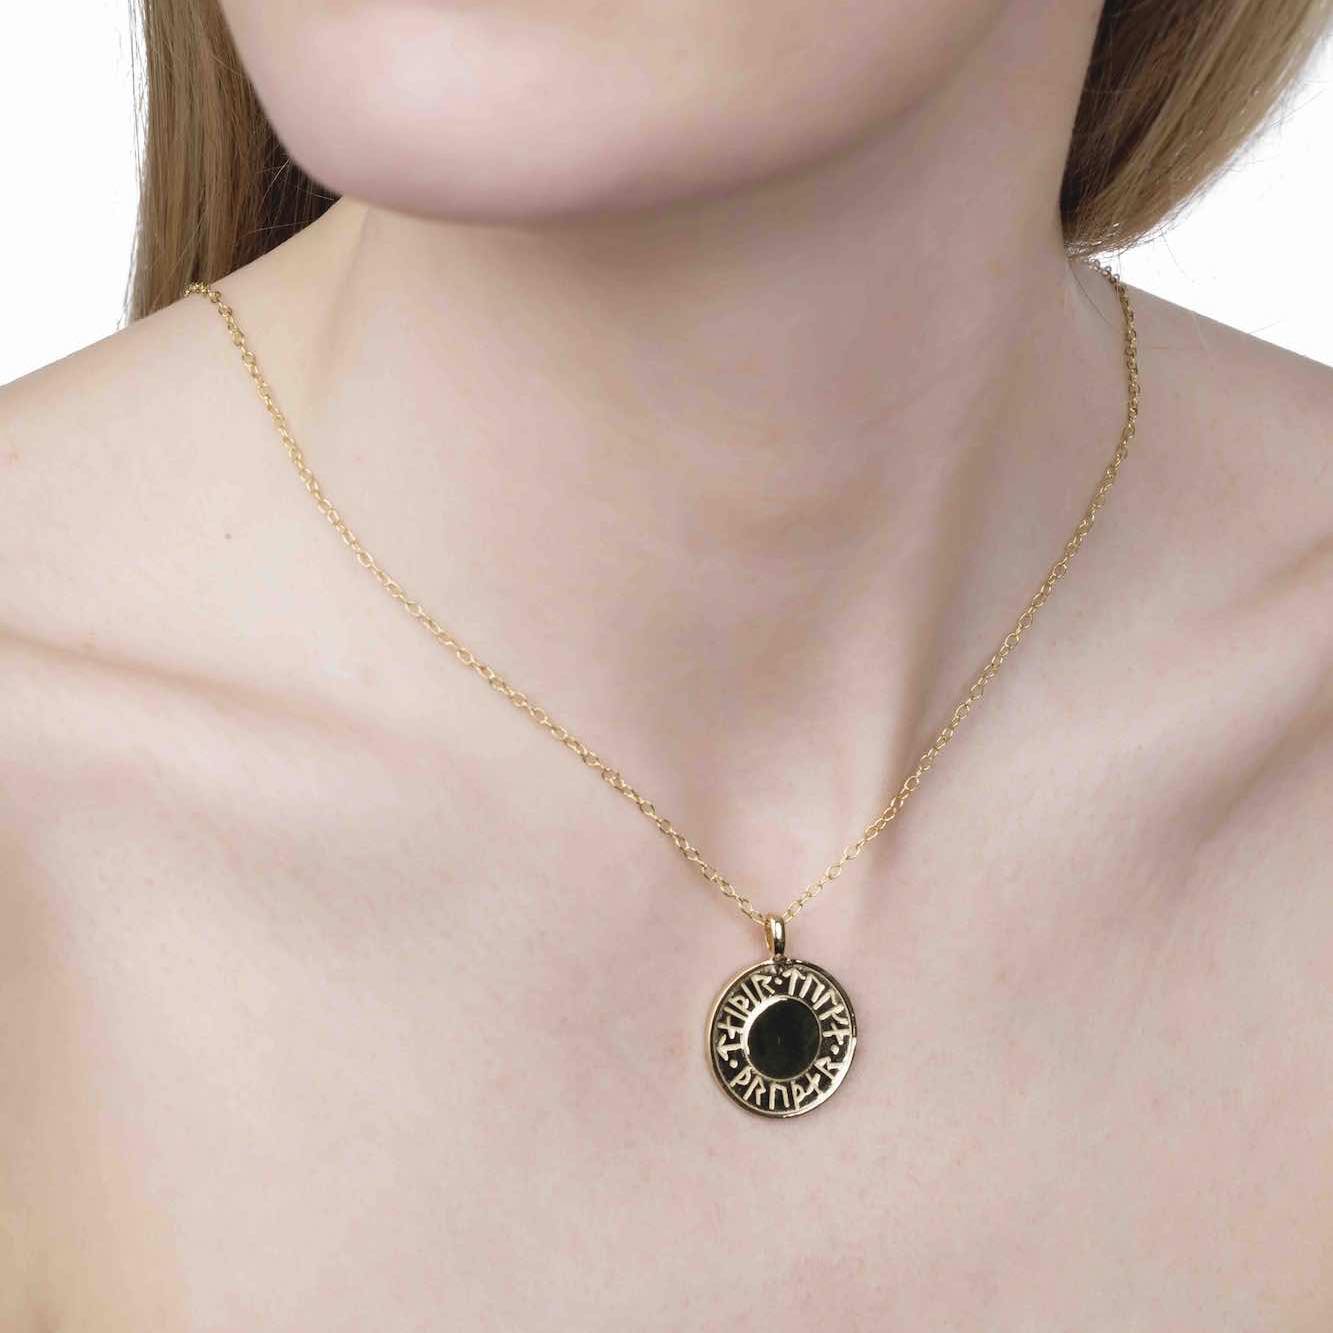 Soldiser Goddess Thrud Gold Rune Necklace on model